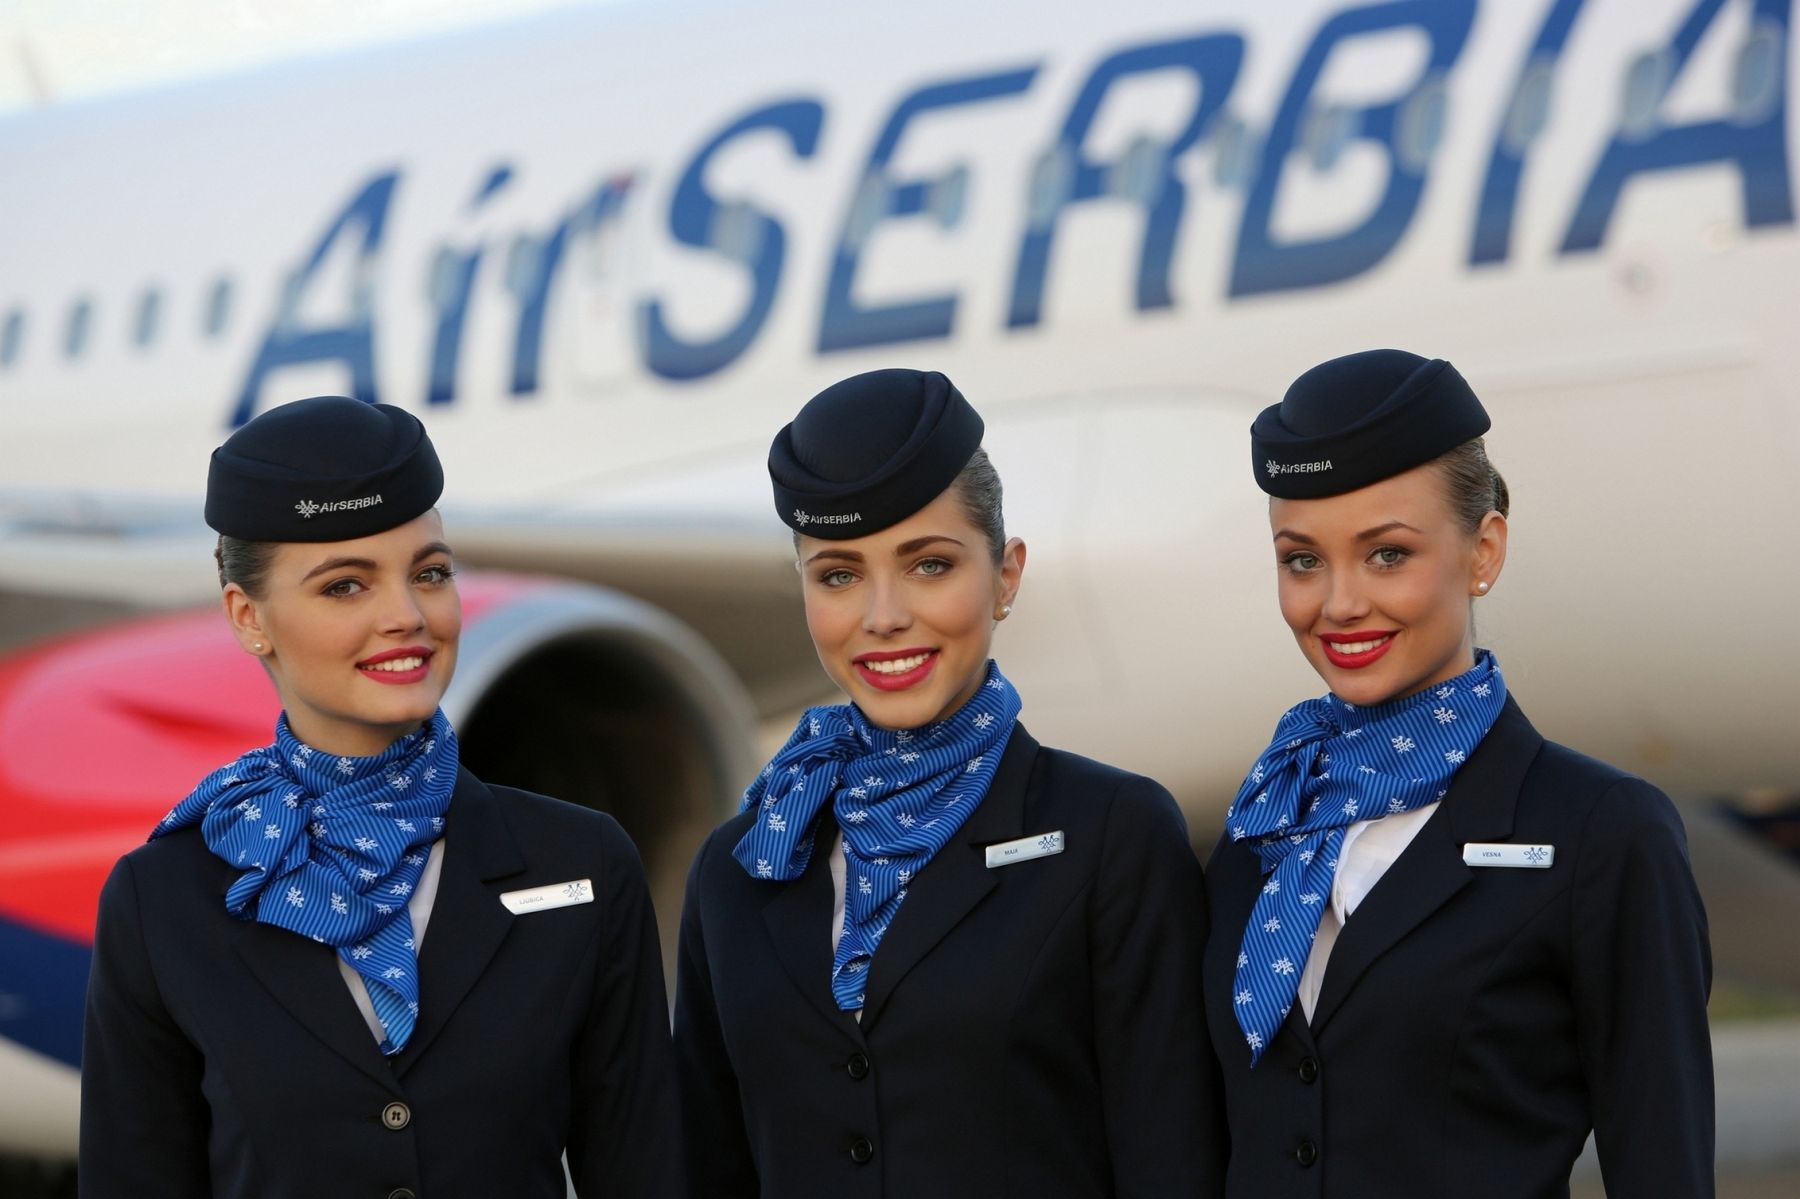 Air-Serbia-Cabin-Crew